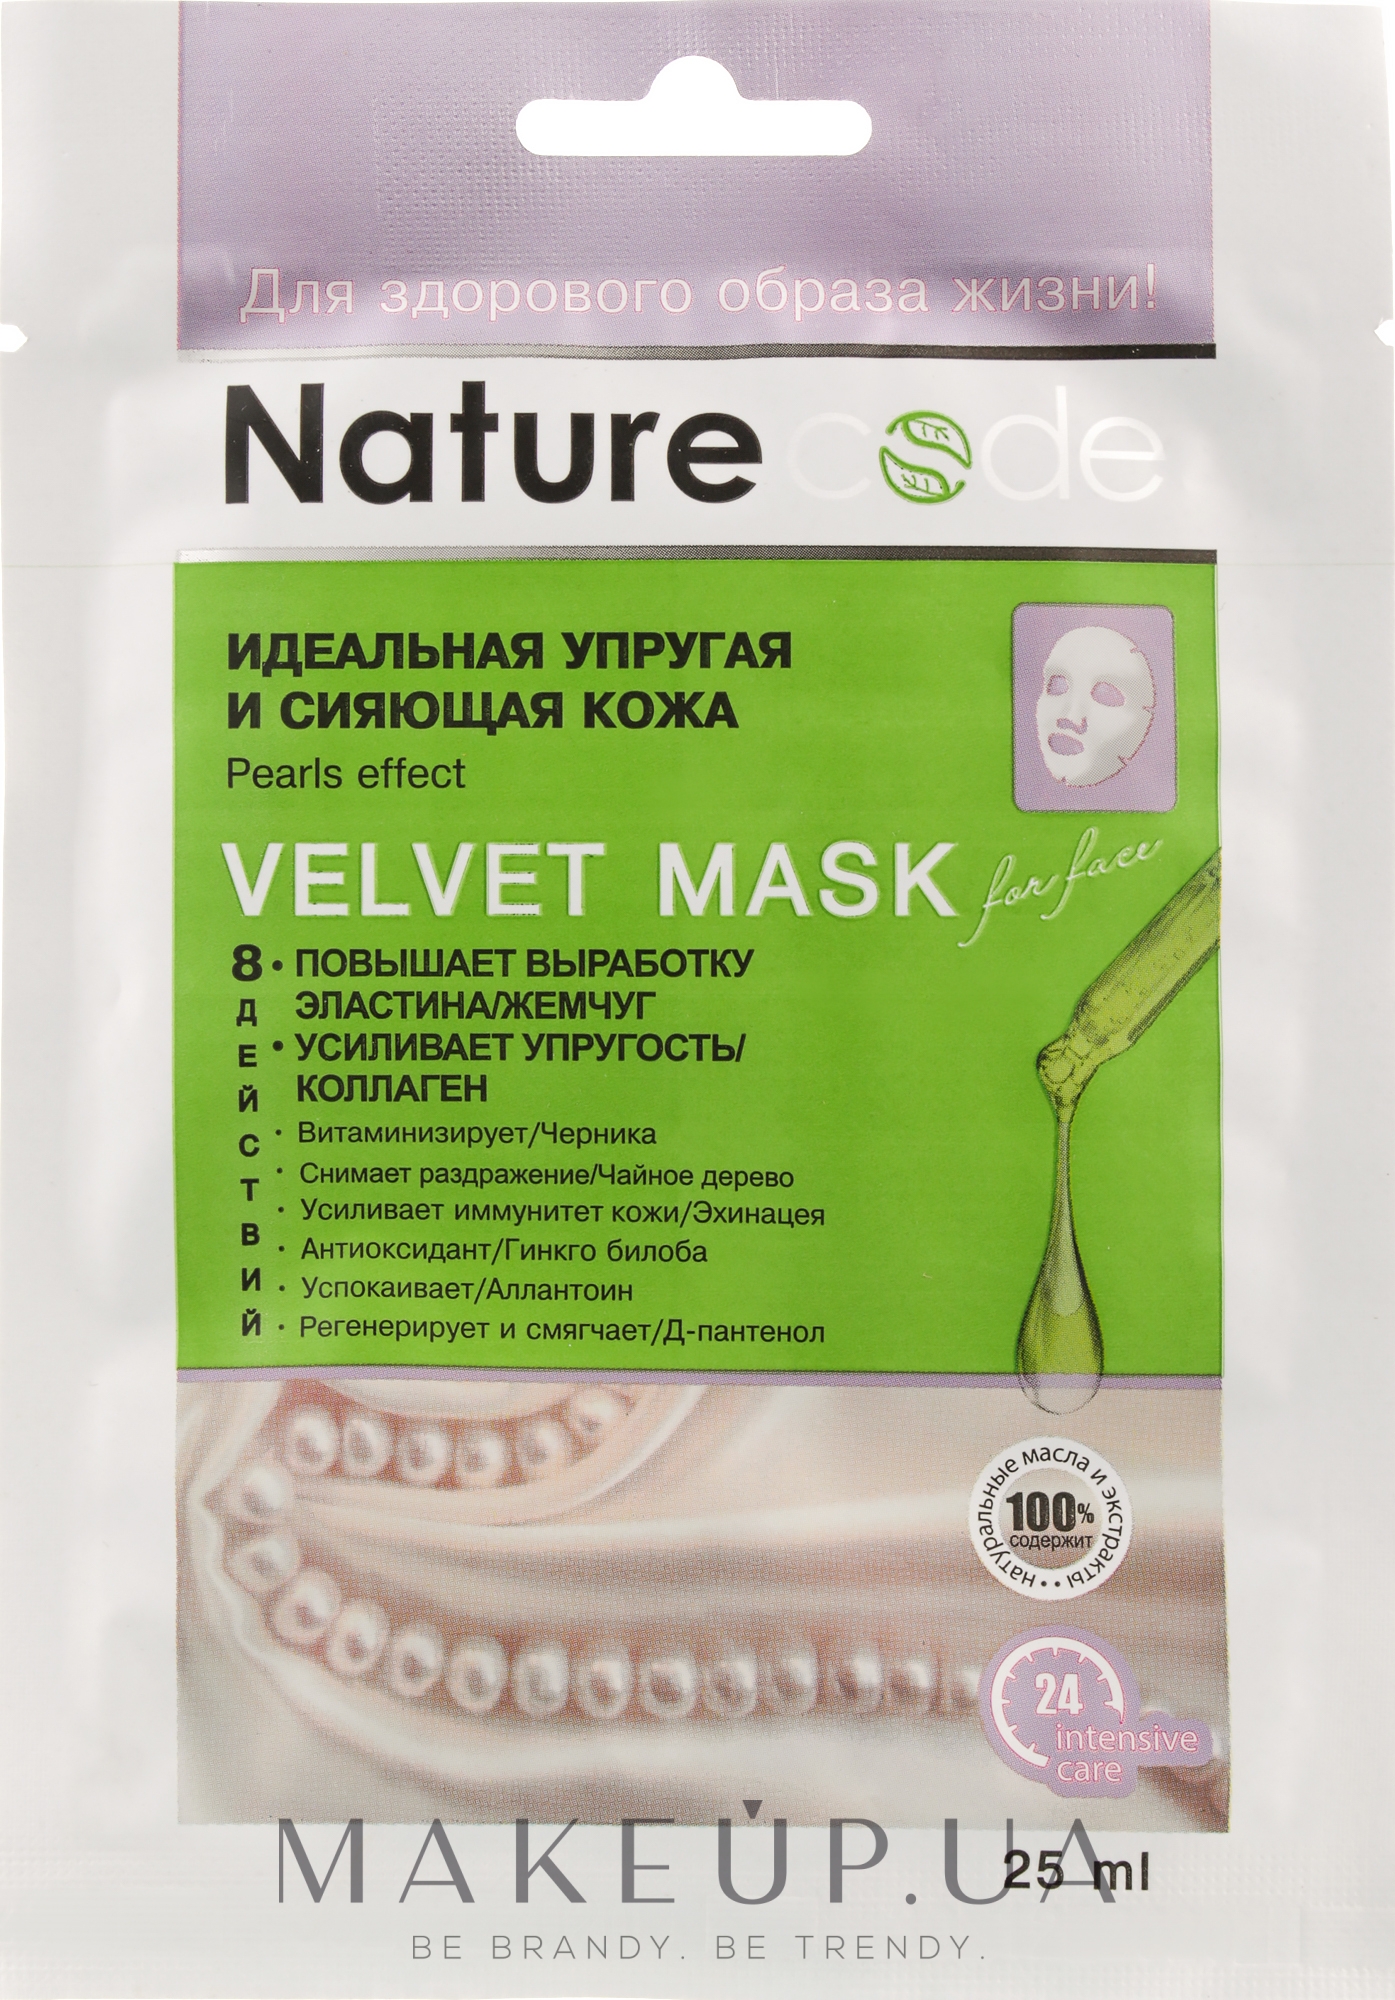 Маска для обличчя "Ідеальна пружна і сяйна шкіра" - Nature Code Velvet Mask Pearls Effect — фото 25ml